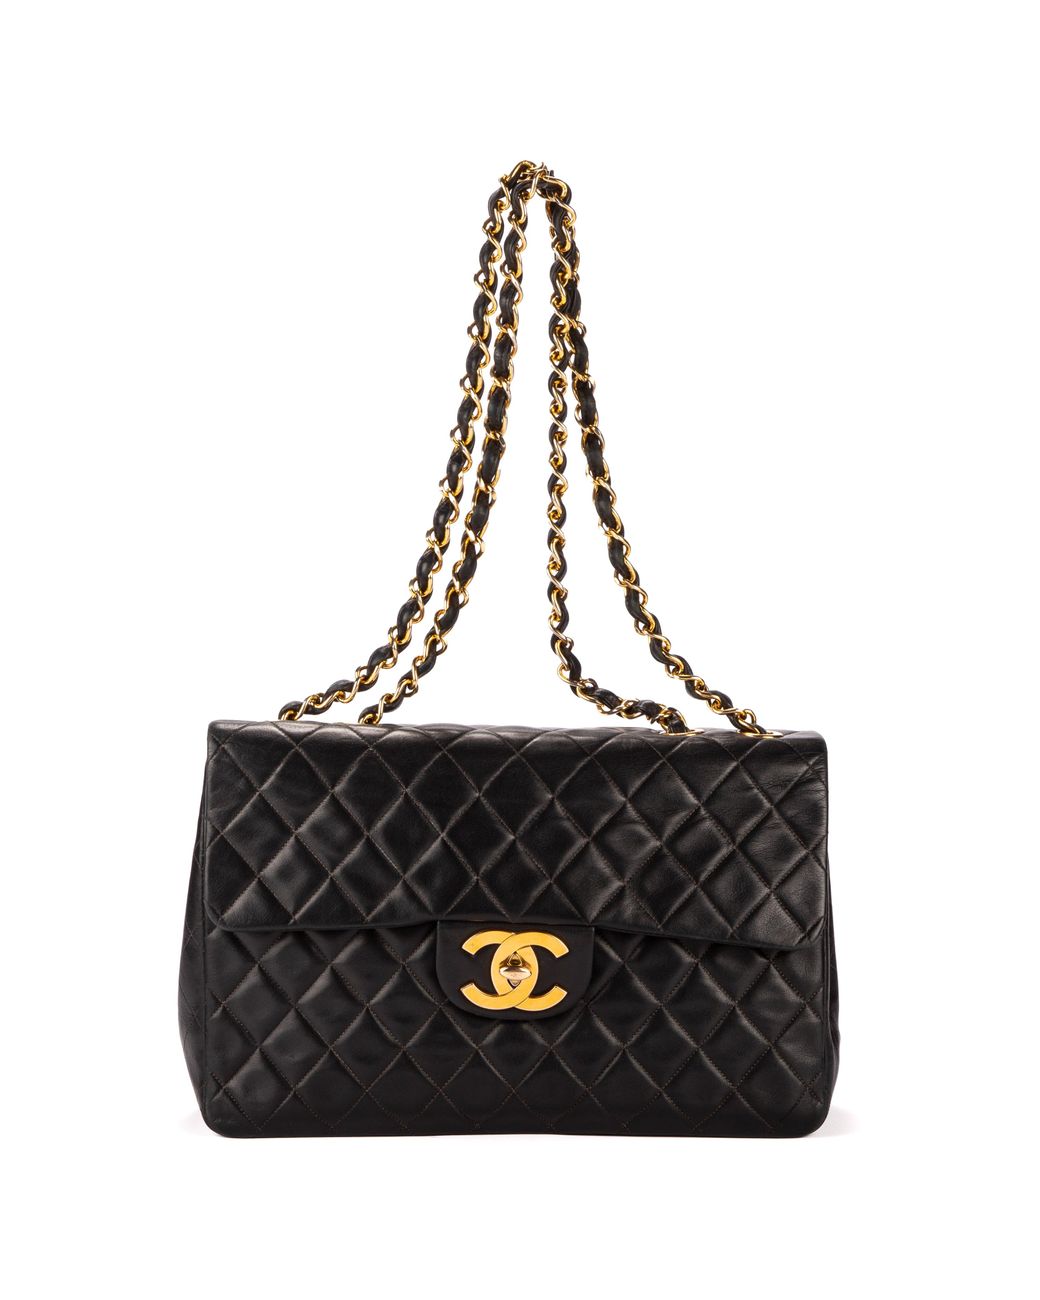 Shop Jumbo & Maxi Flap Bags, Chanel Handbags